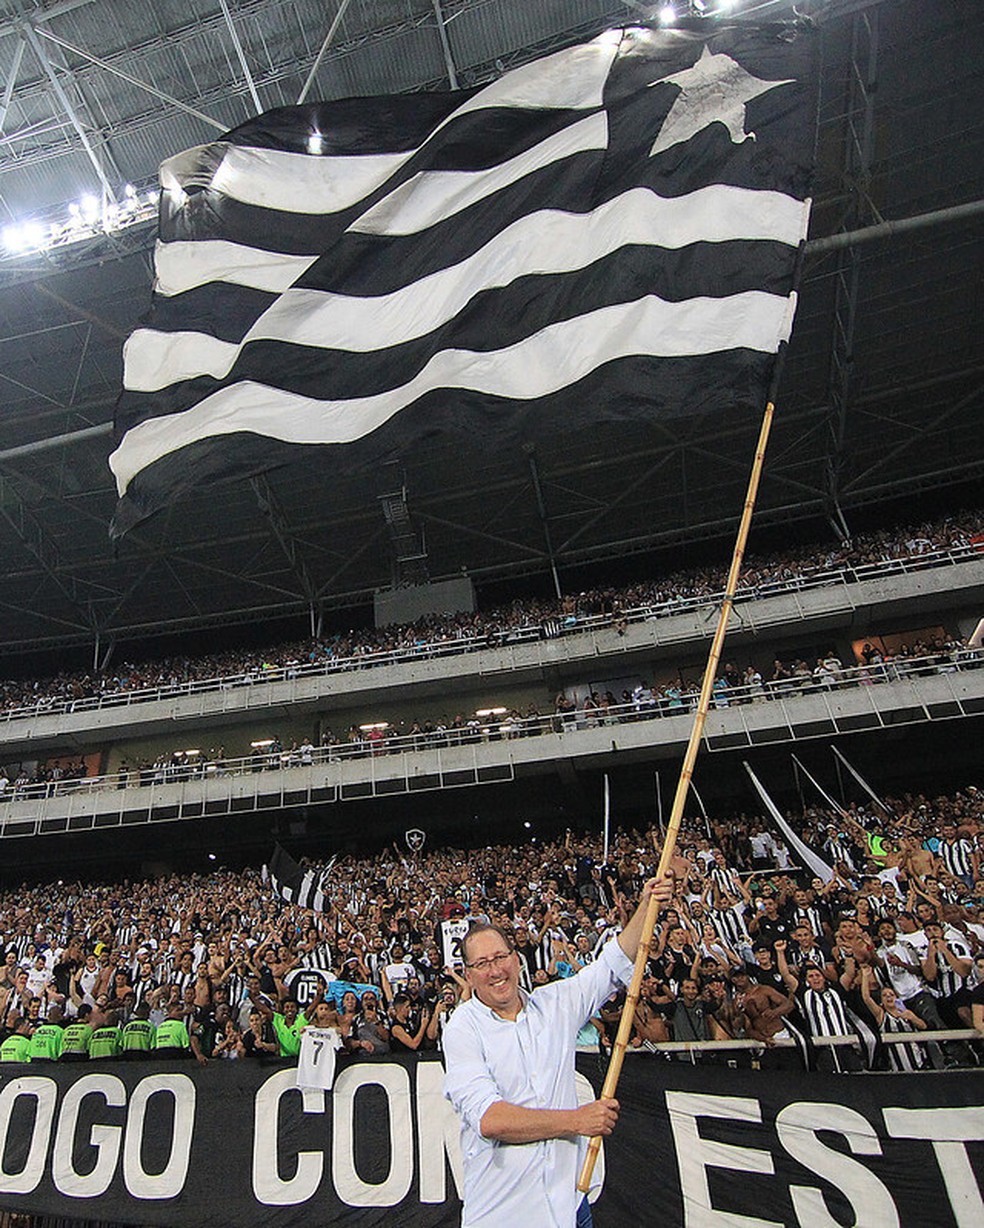 John Textor, do Botafogo, após ver jogo na torcida: É o único jeito de  assistir a futebol, botafogo